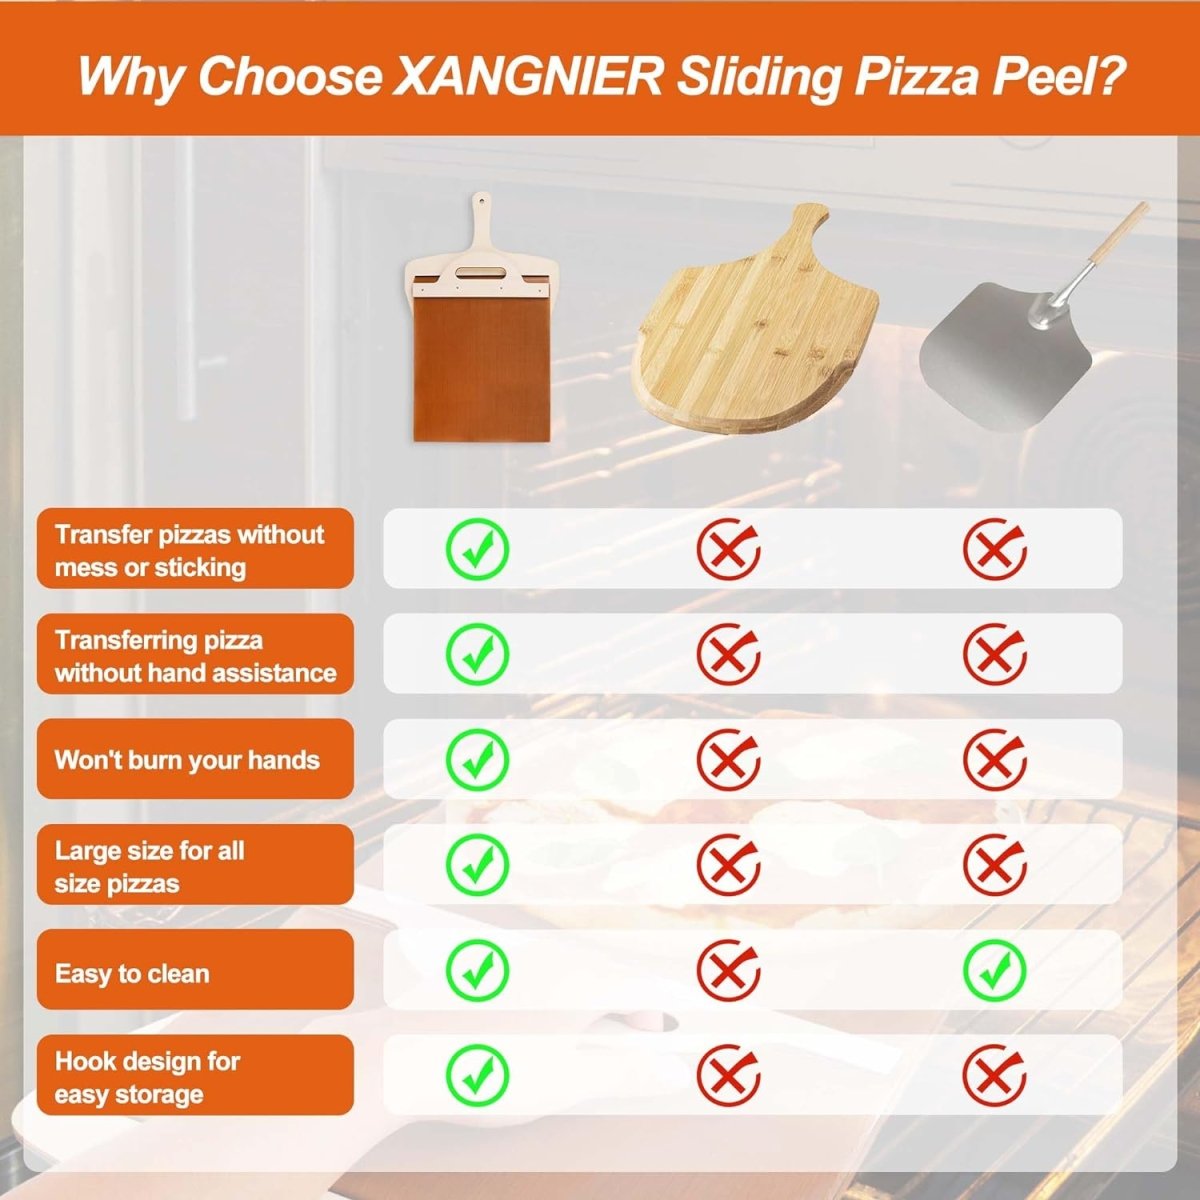 Slider Pizza Shovel - LightsBetter